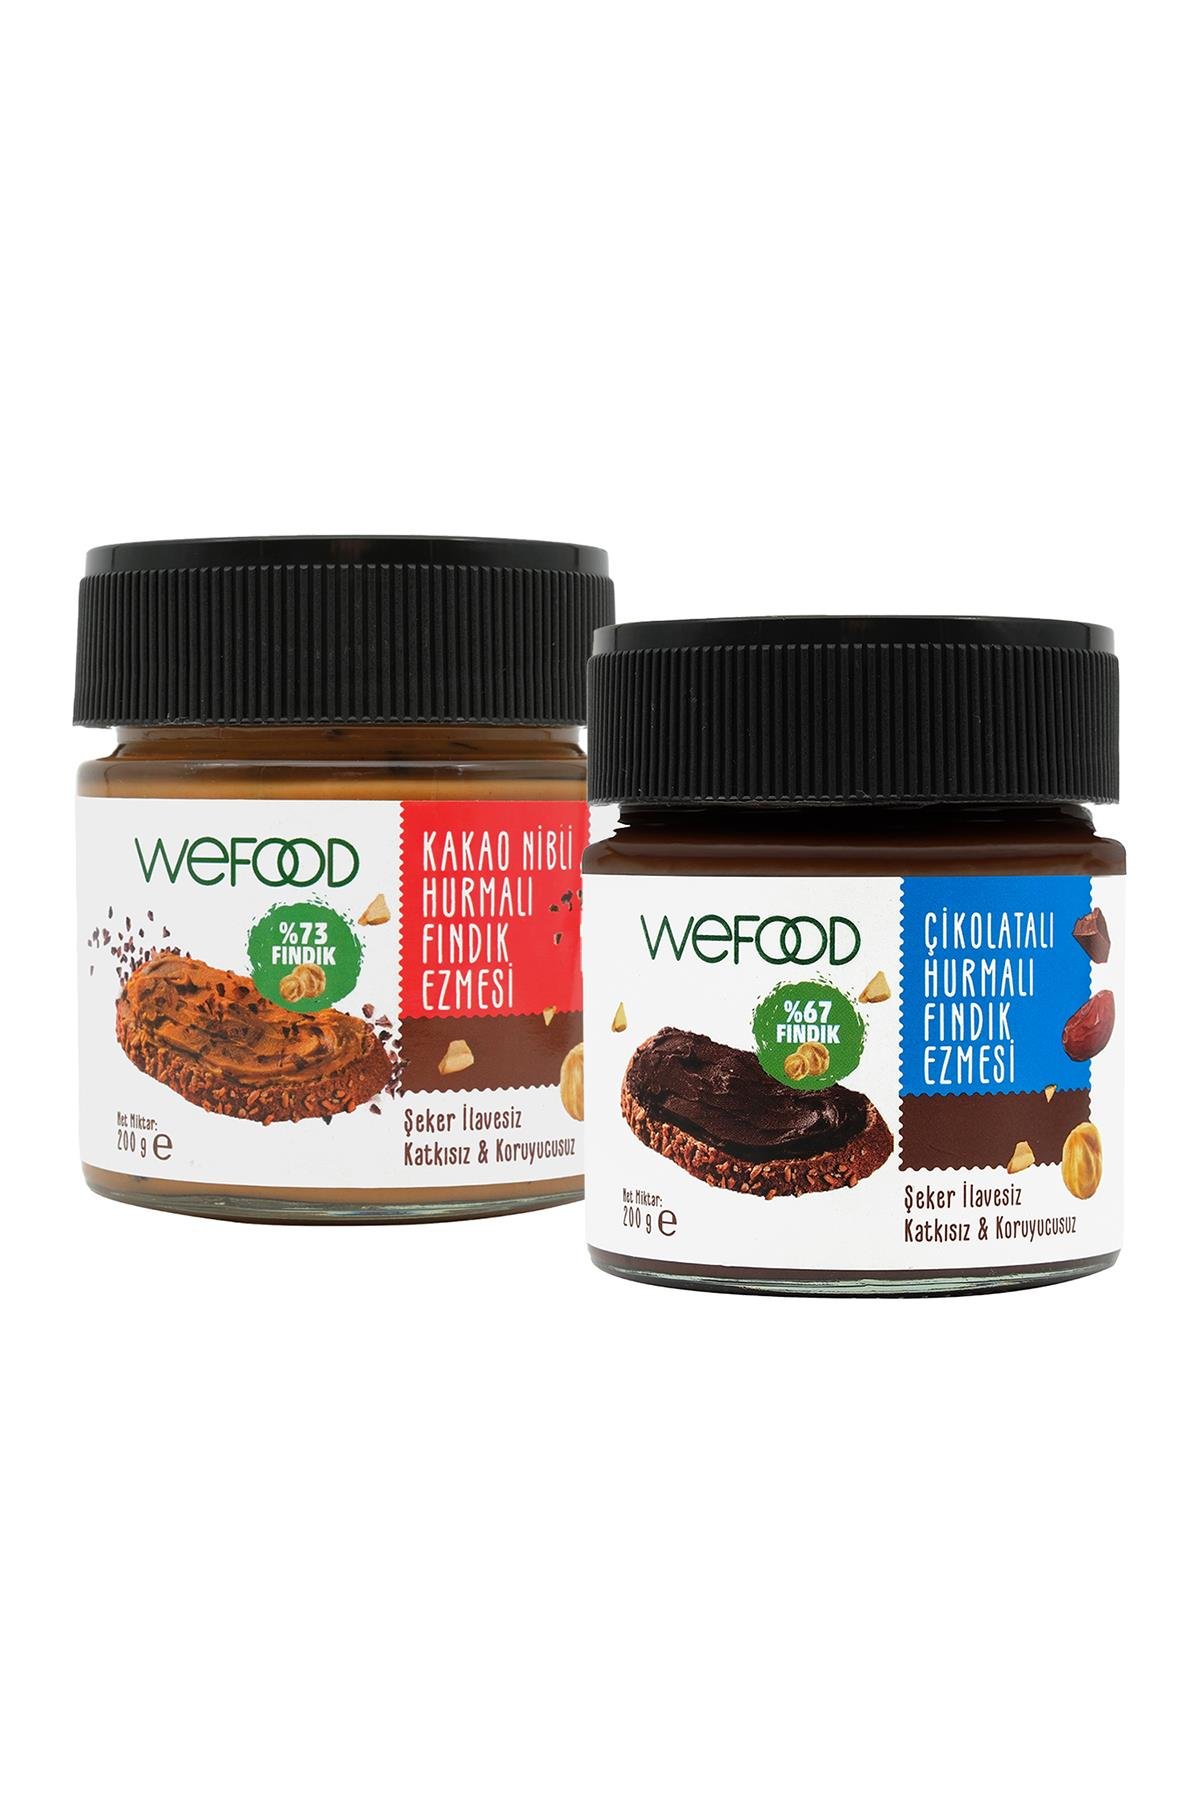 Wefood Kakao Nibli Hurmalı Fındık Ezmesi 200 gr + Wefood Çikolatalı Hurmalı Fındık Ezmesi (Şekersiz, Katkısız) 200 gr